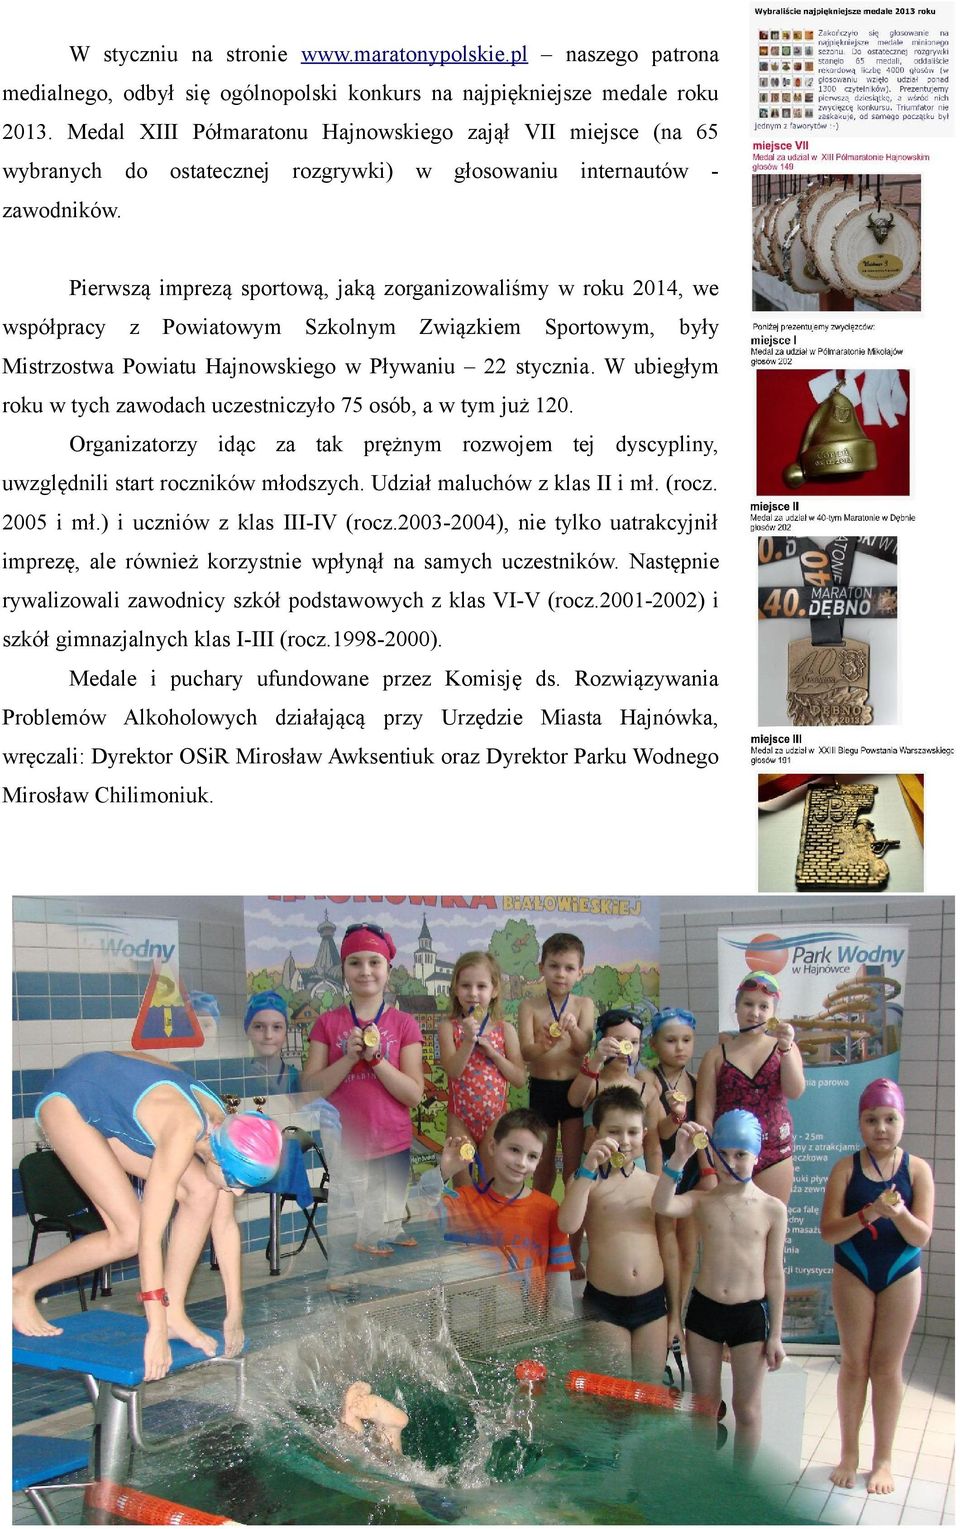 Pierwszą imprezą sportową, jaką zorganizowaliśmy w roku 2014, we współpracy z Powiatowym Szkolnym Związkiem Sportowym, były Mistrzostwa Powiatu Hajnowskiego w Pływaniu 22 stycznia.